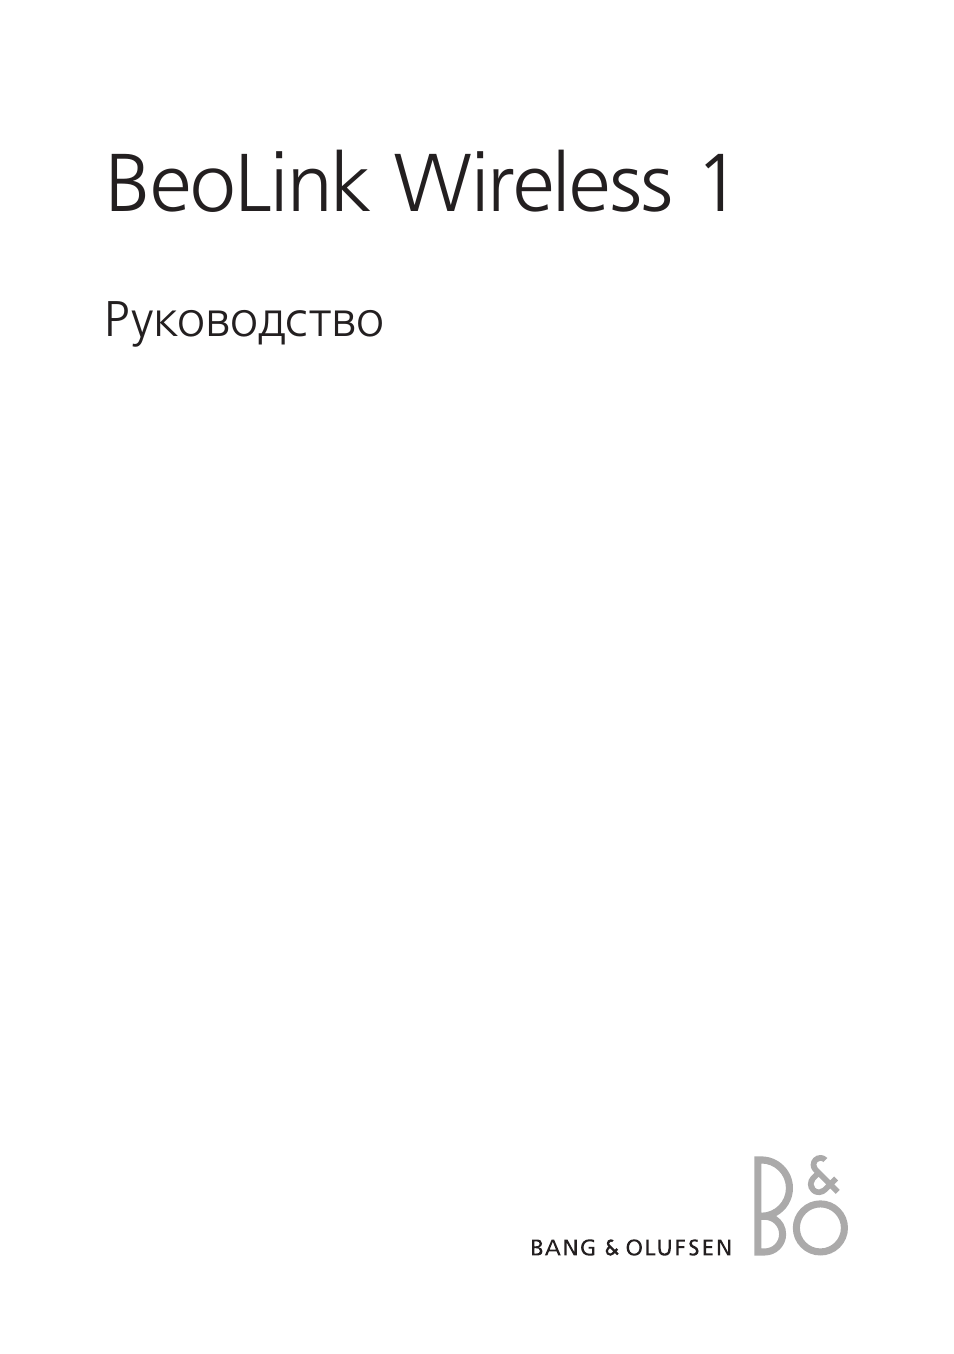 Инструкция по эксплуатации Bang & Olufsen BeoLink Wireless 1 - User Guide | 20 страниц